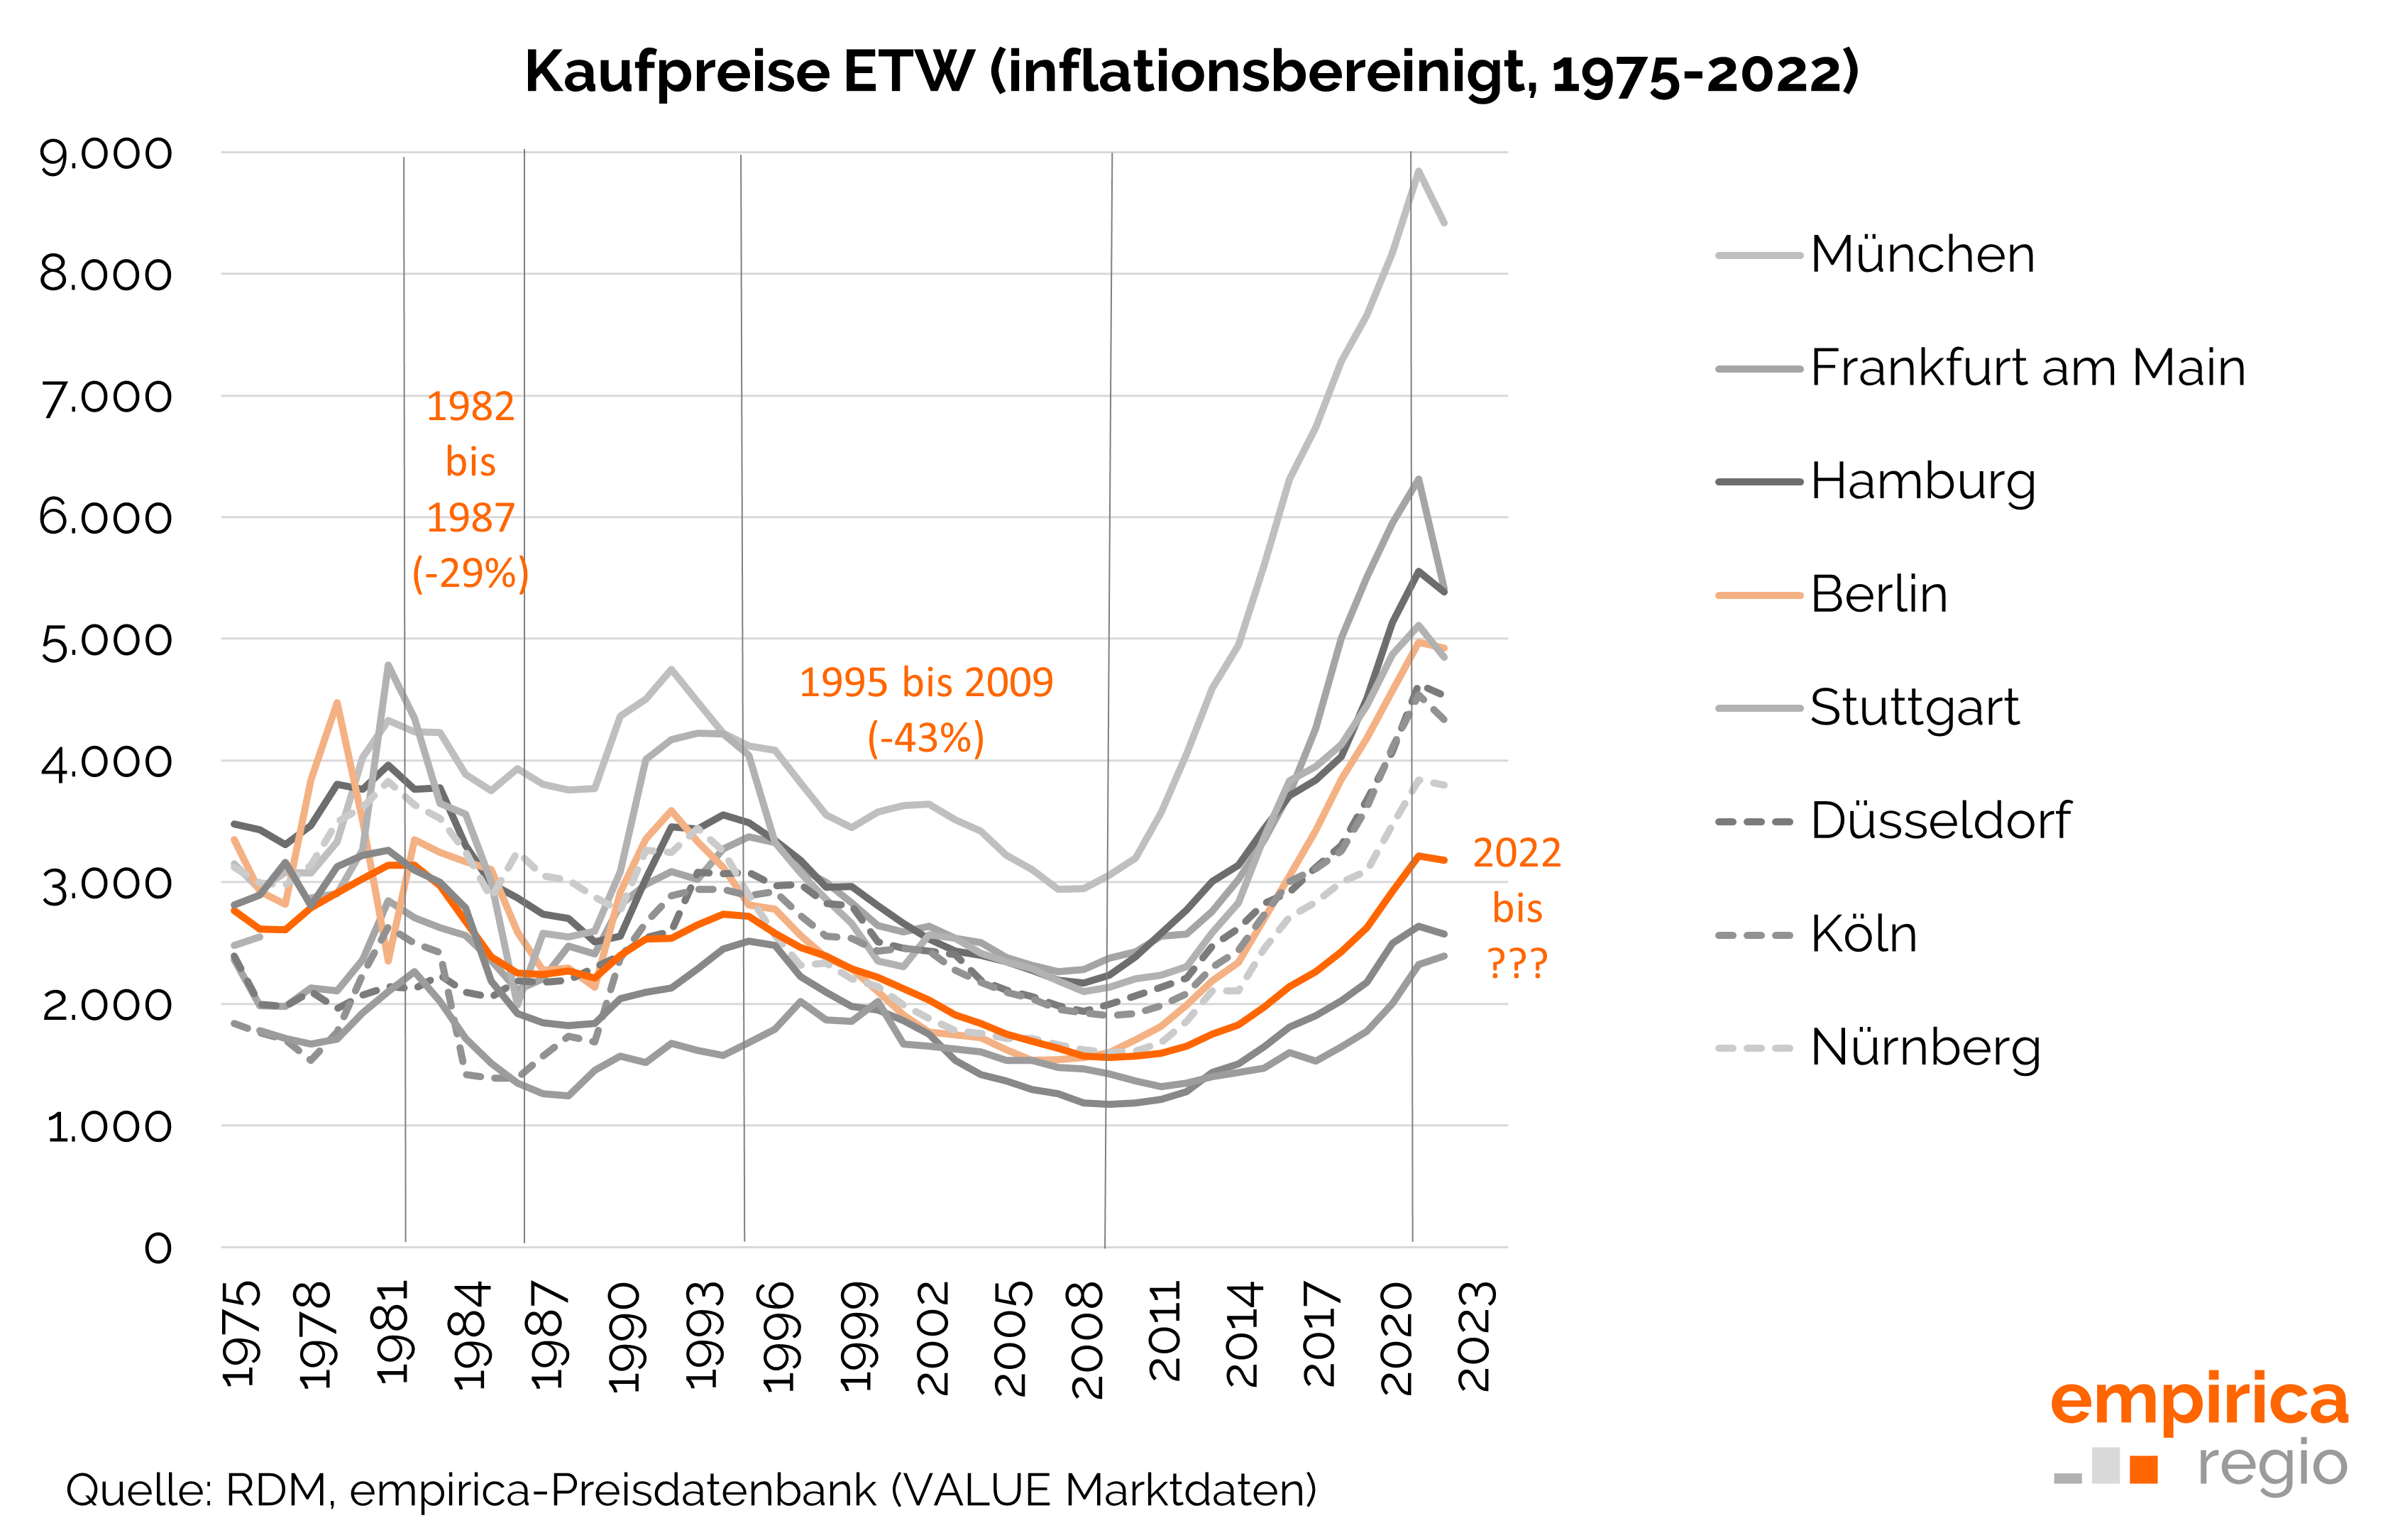 Inflationsbereinigte Entwicklung der Kaufpreise für Eigentumswohnungen in ausgewählten Städten von 1975 bis 2022